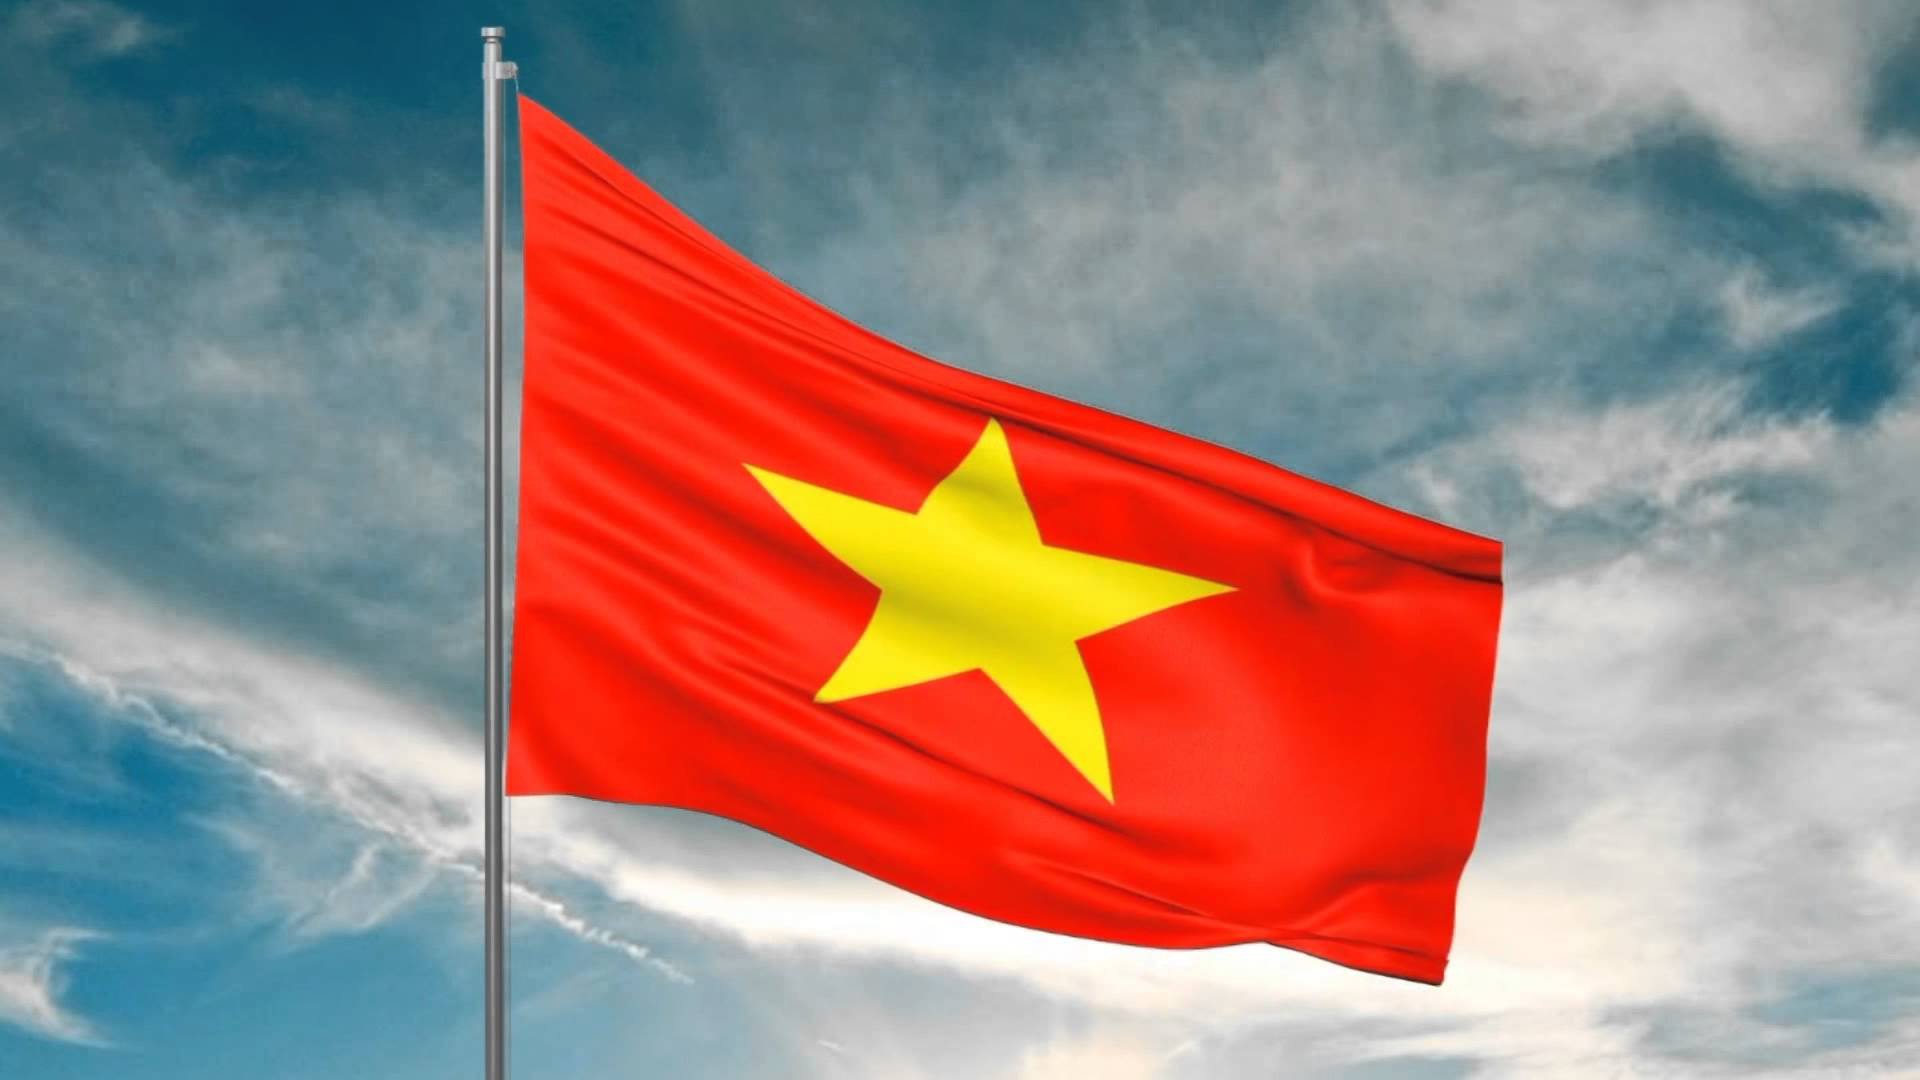 Lá cờ Tổ quốc
Lá cờ Tổ quốc là biểu tượng thể hiện tình yêu quê hương và lòng tự hào dân tộc của người Việt. Năm 2024, Việt Nam sẽ chú trọng thực hiện việc truyền cảm hứng và giáo dục về giá trị của lá cờ này cho thế hệ trẻ. Đồng thời, diễu hành và sử dụng lá cờ Tổ quốc trong các sự kiện quan trọng cũng sẽ được đẩy mạnh, từ đó giúp toàn xã hội nhận thức được ý nghĩa và giá trị của lá cờ này.